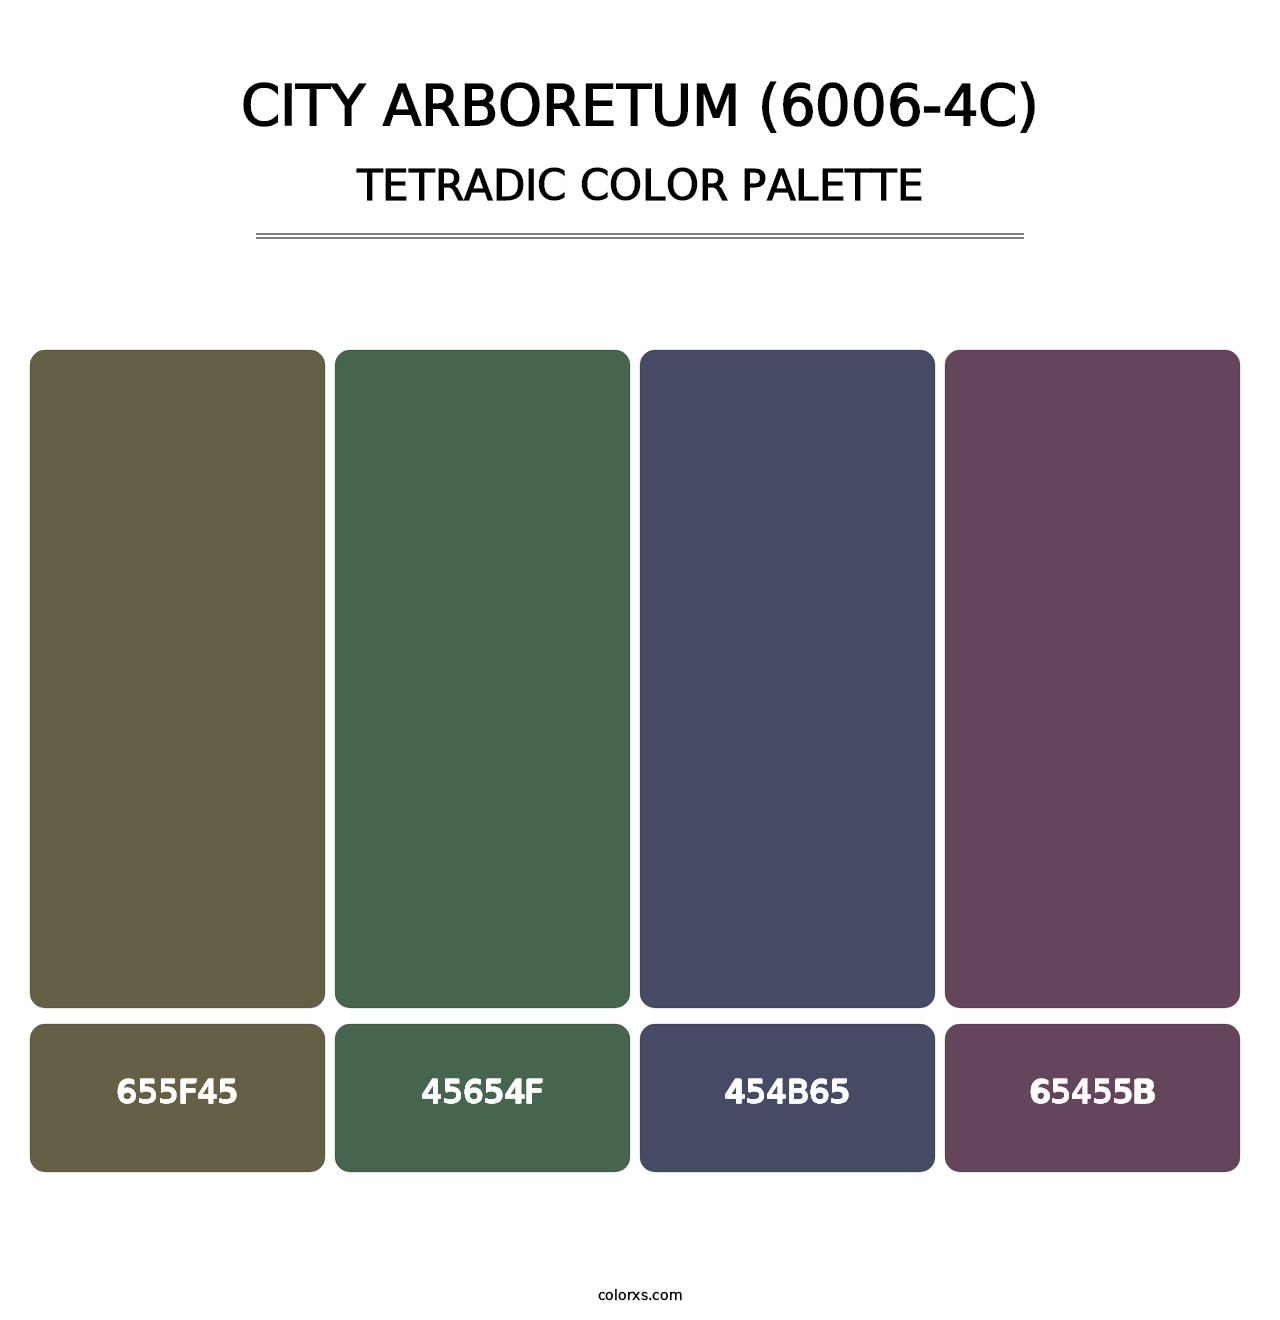 City Arboretum (6006-4C) - Tetradic Color Palette